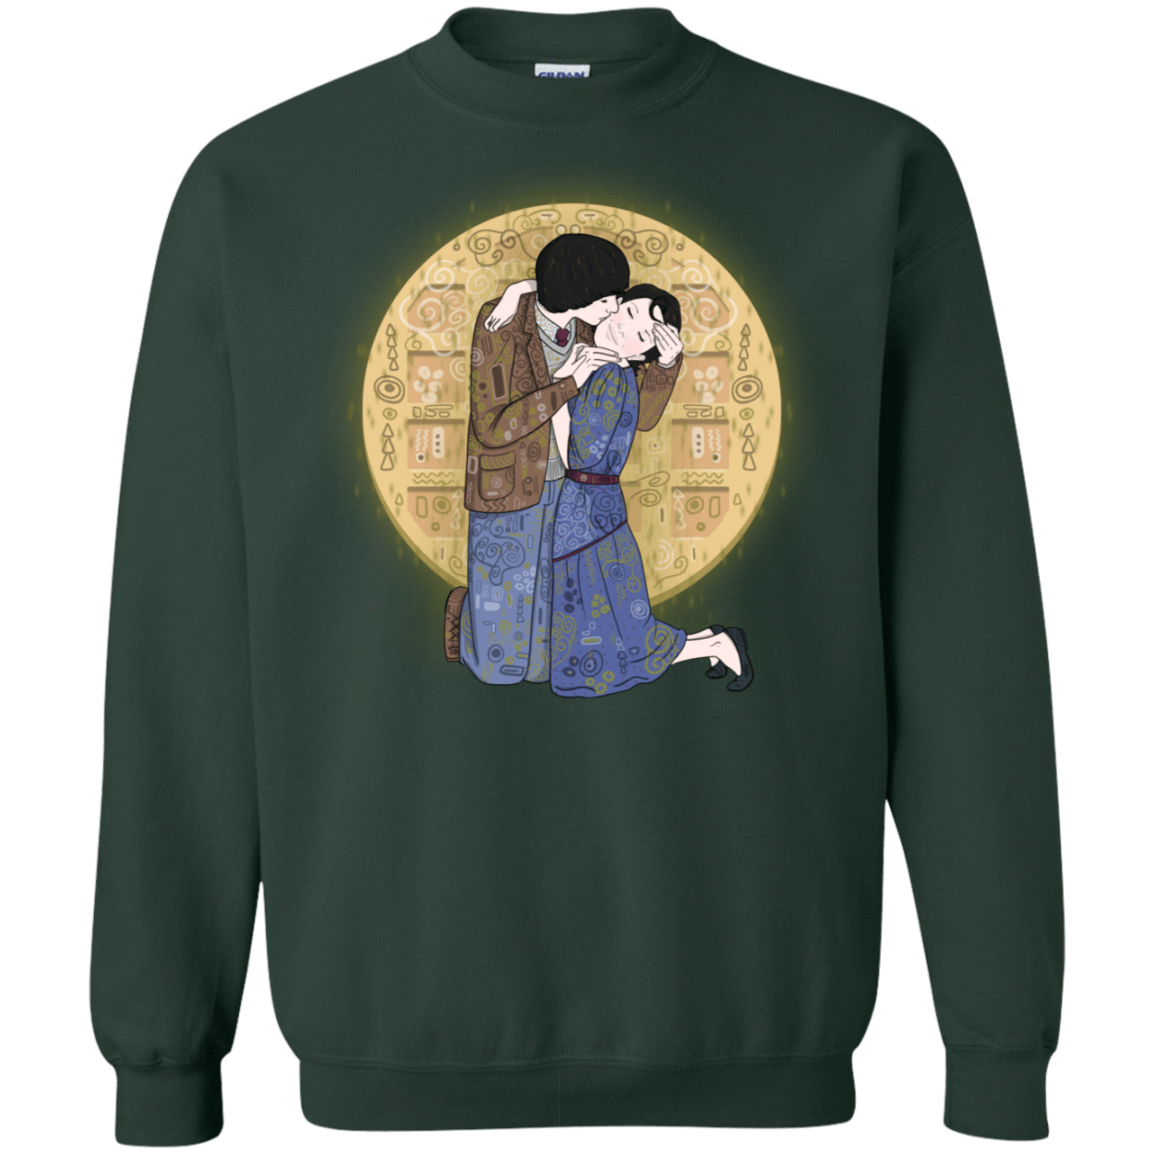 Sweatshirts Forest Green / S Stranger Klimt Crewneck Sweatshirt